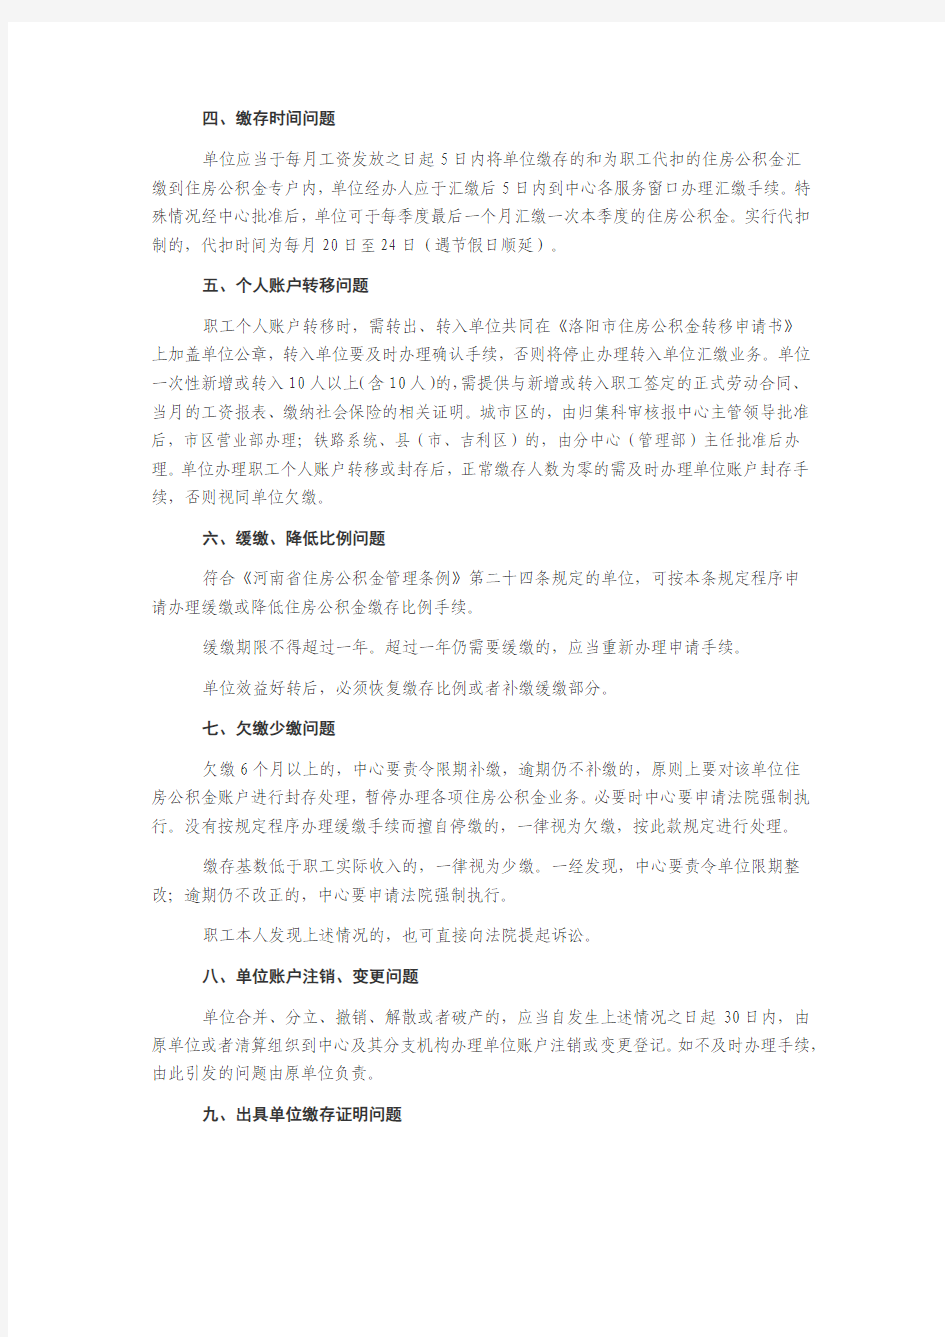 2015年洛阳最新住房公积金政策(全文)